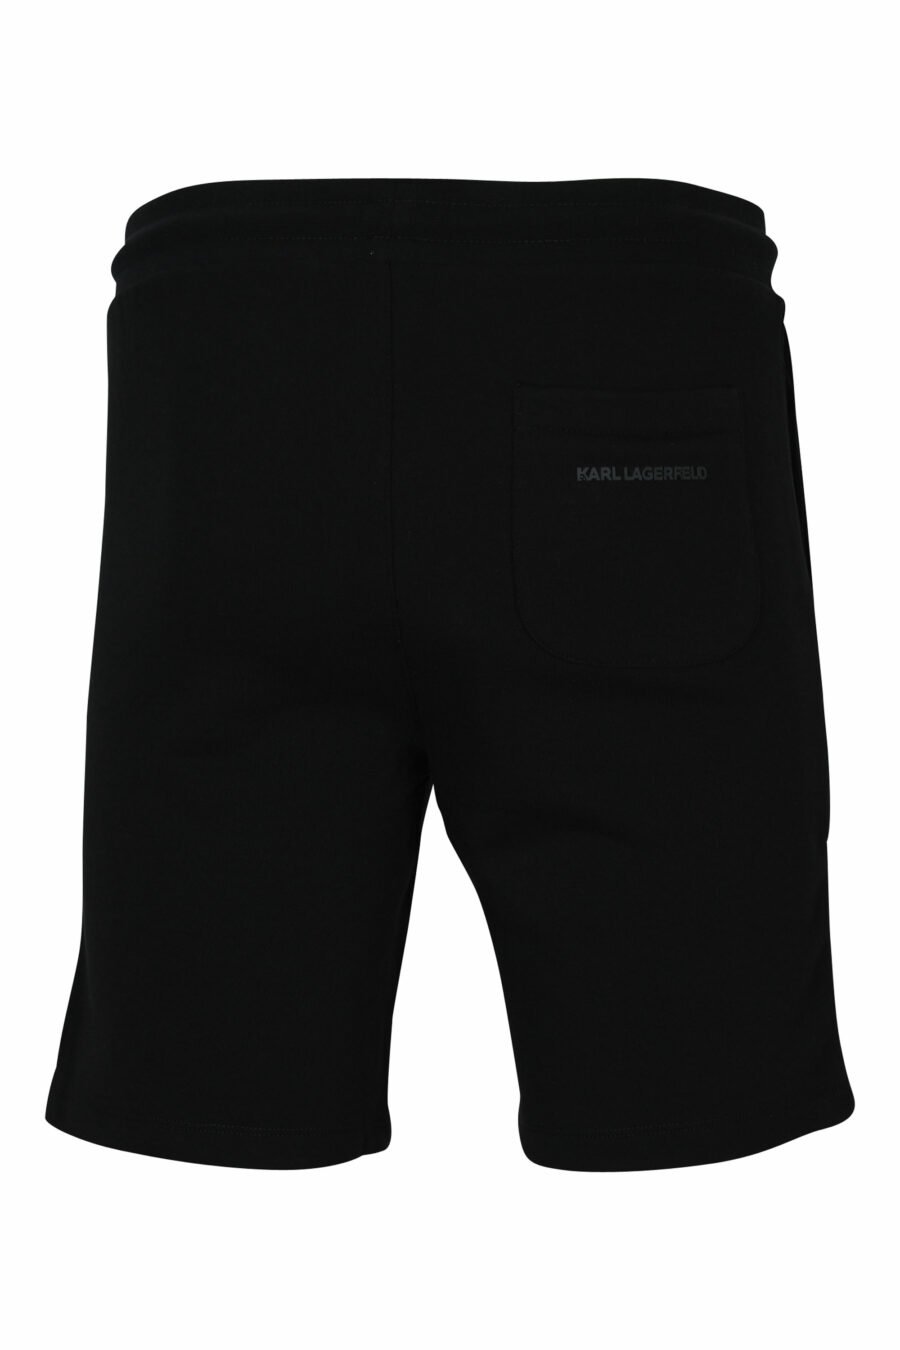 Pantalón de chándal corto negro con minilogo azul en goma - 4062226782364 1